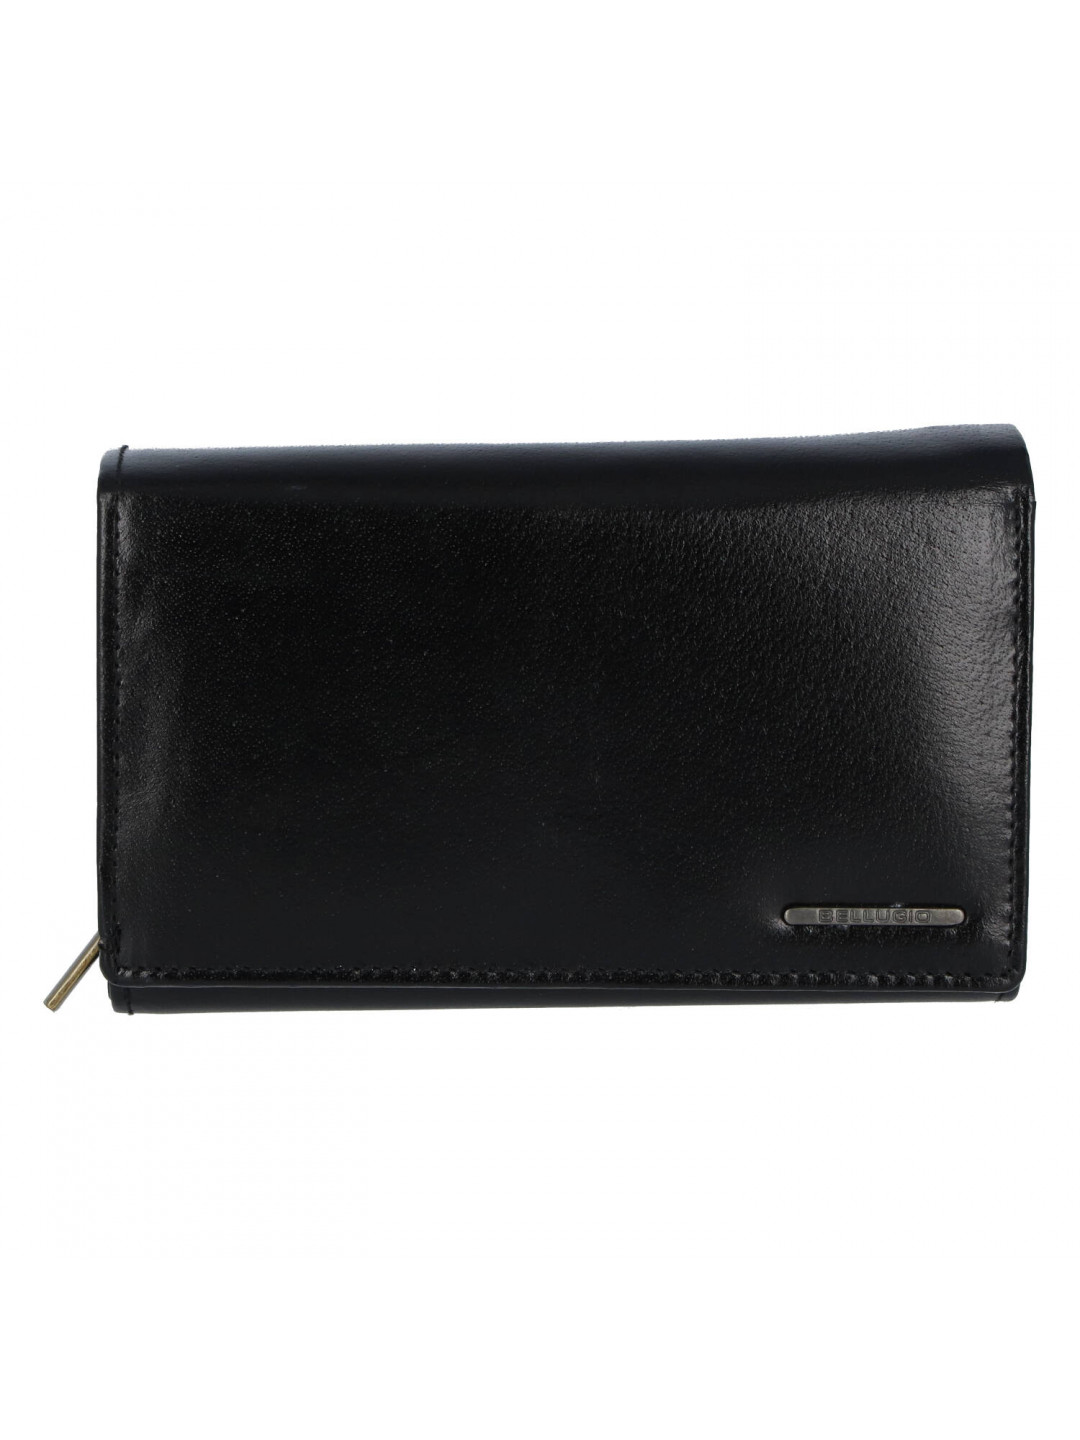 Dámská kožená peněženka Bellugio Jasmina černá